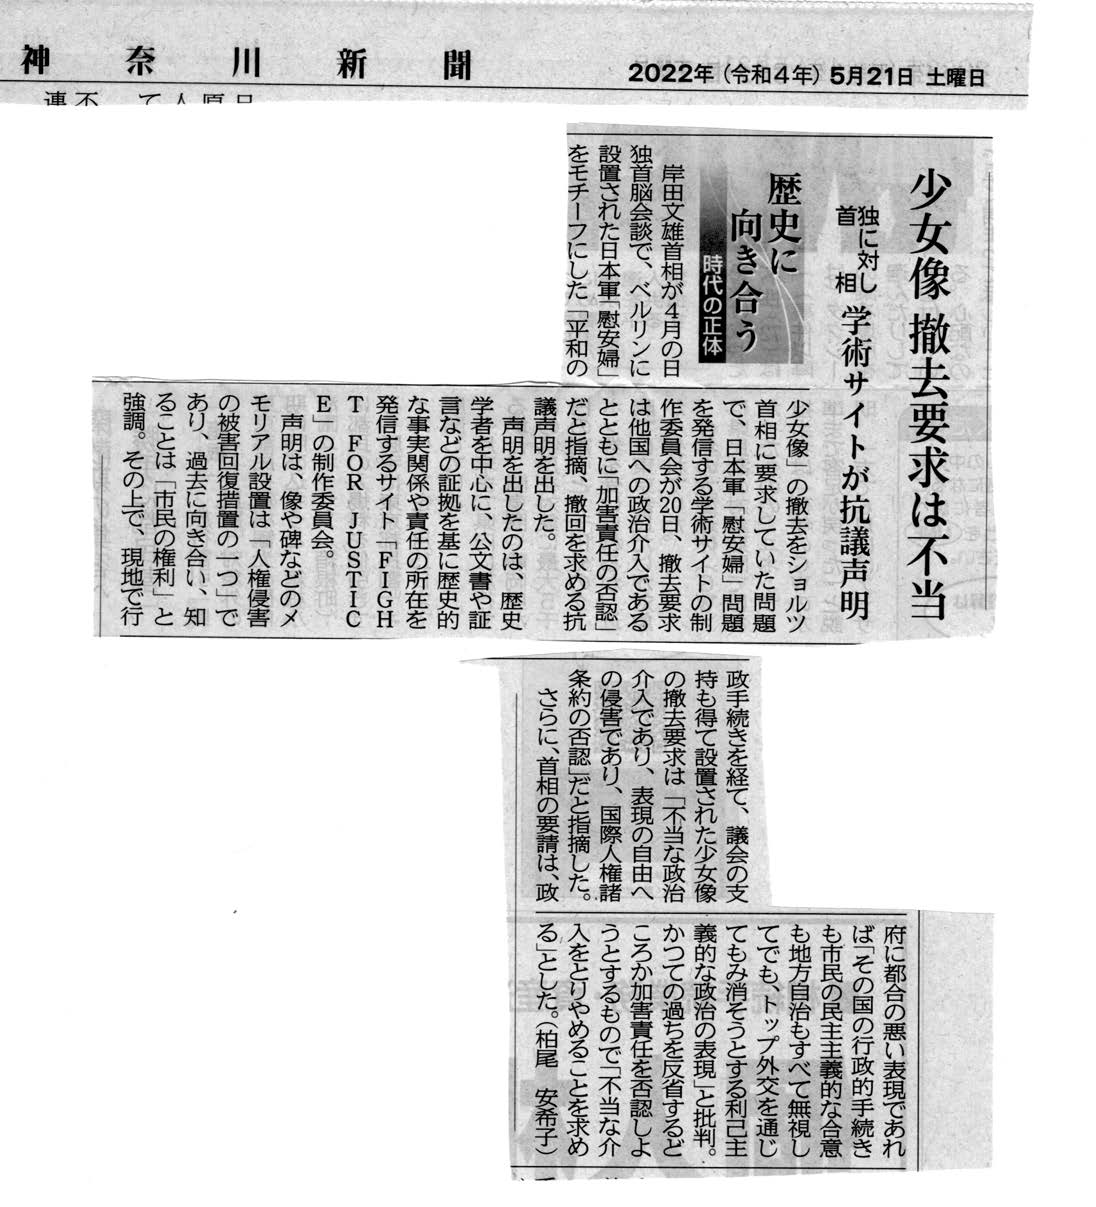 神奈川新聞「少女像 撤去要求は不当」